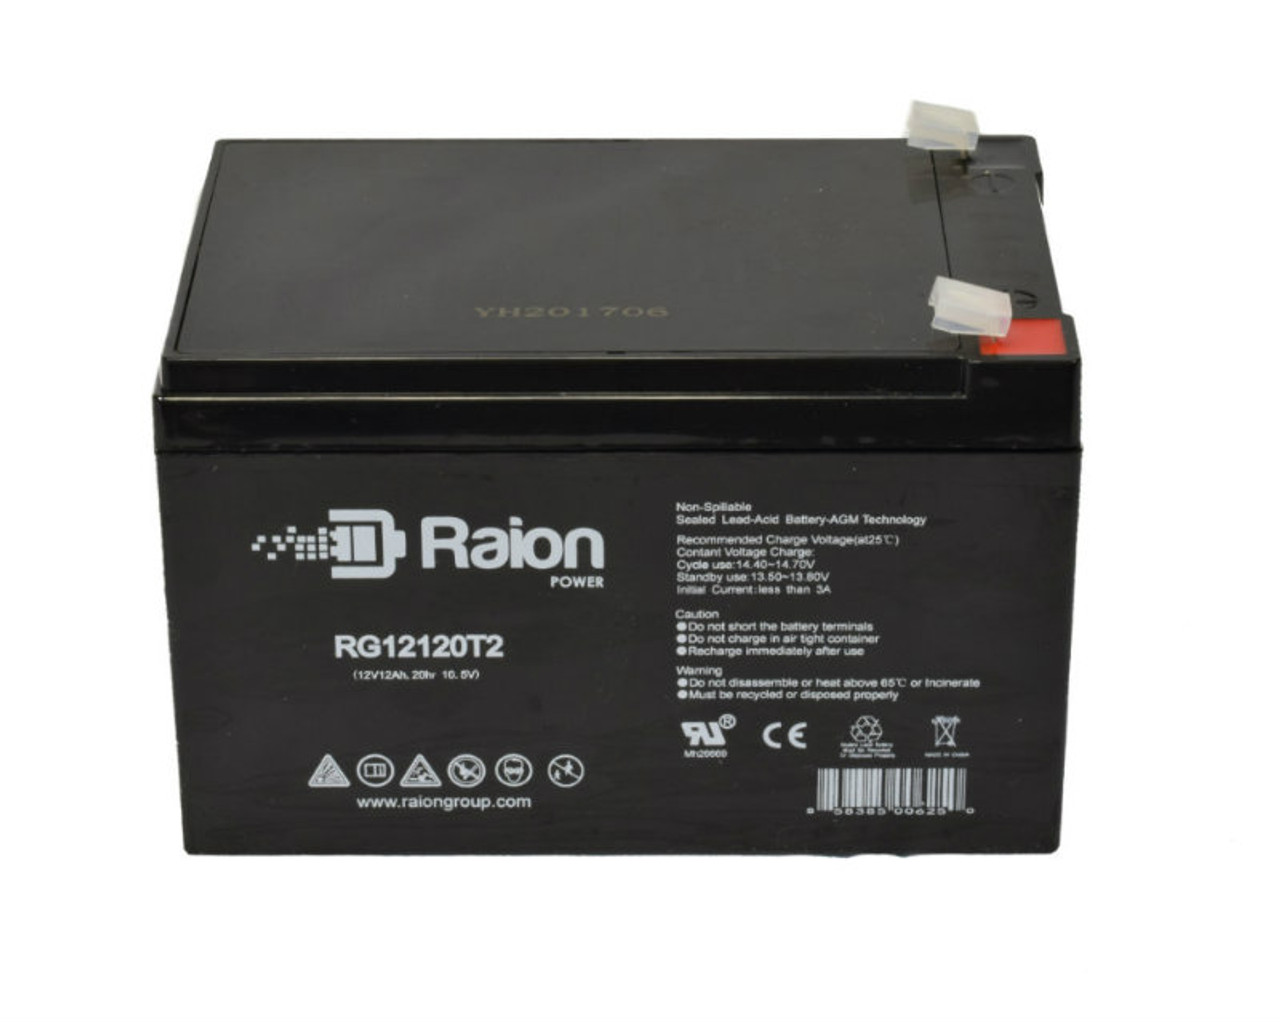 Raion Power RG12120T2 SLA Battery for ELK Battery ELK-12120